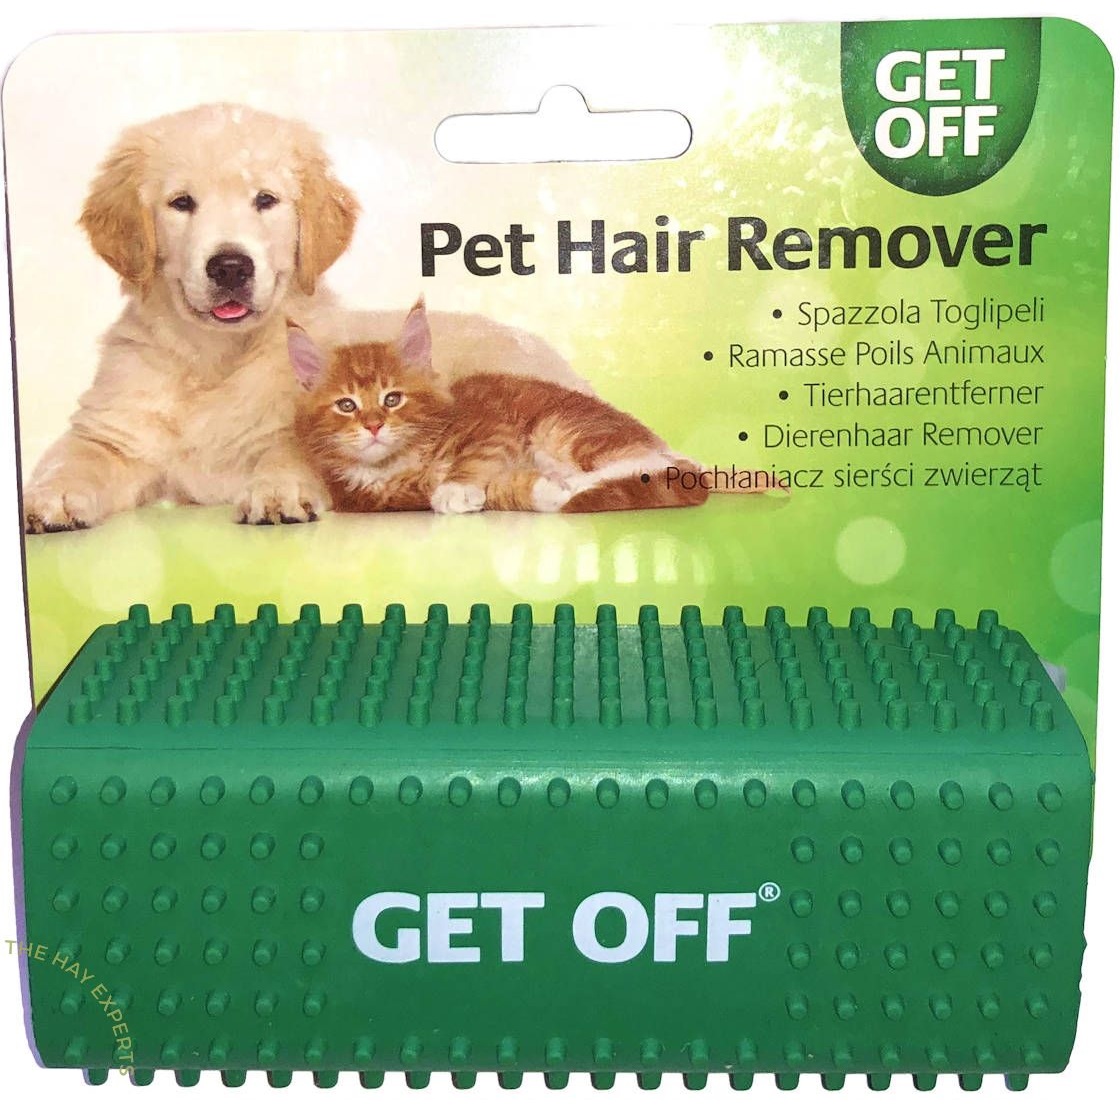 Pet-hair-remover.jpg